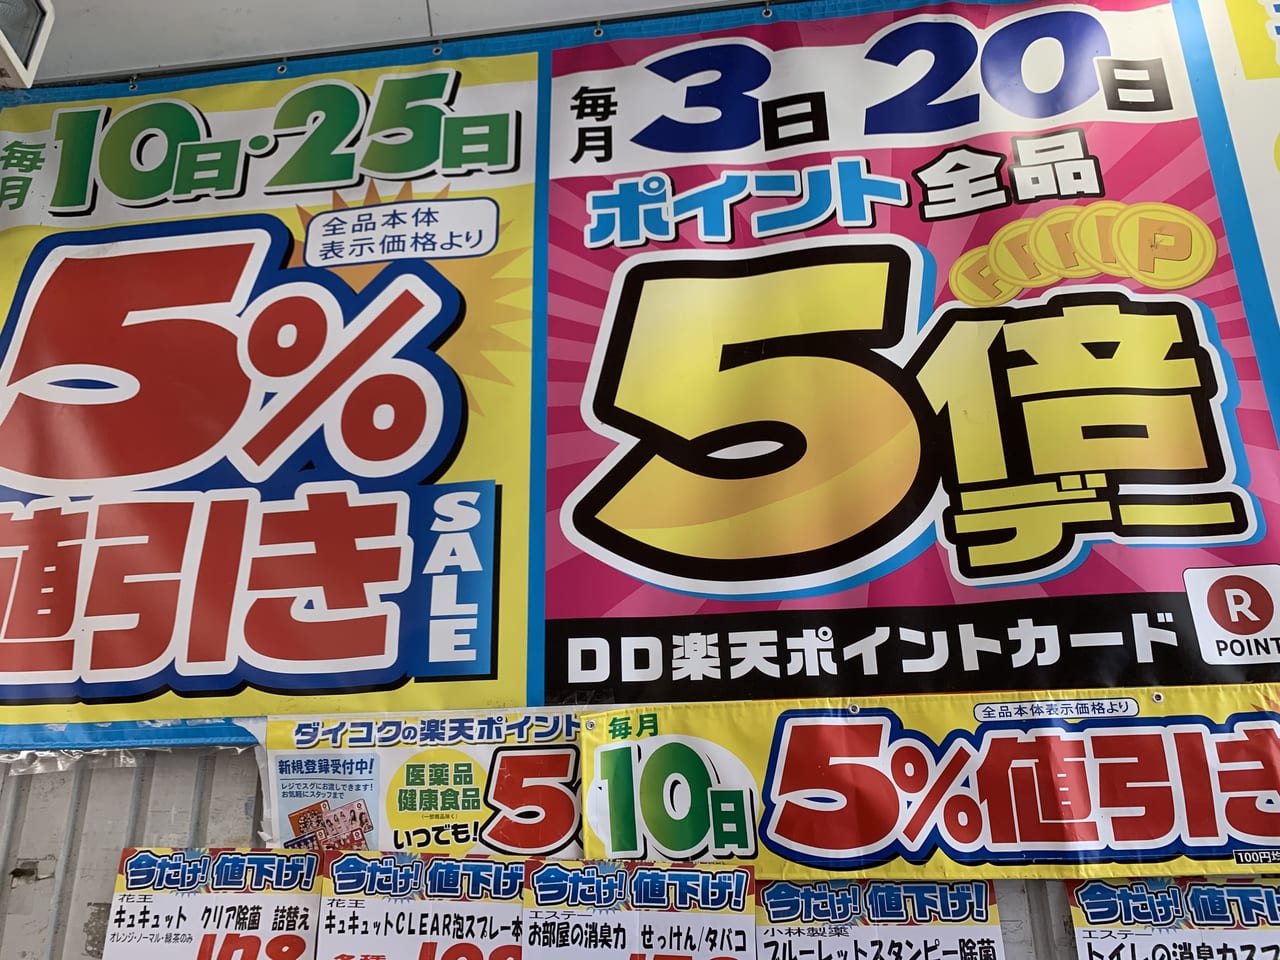 神戸市垂水区 マスクは底値 垂水のダイコクドラッグで値下げマスクの価格をチェック 毎月3日と日はポイント5倍 号外net 神戸市垂水区 須磨区